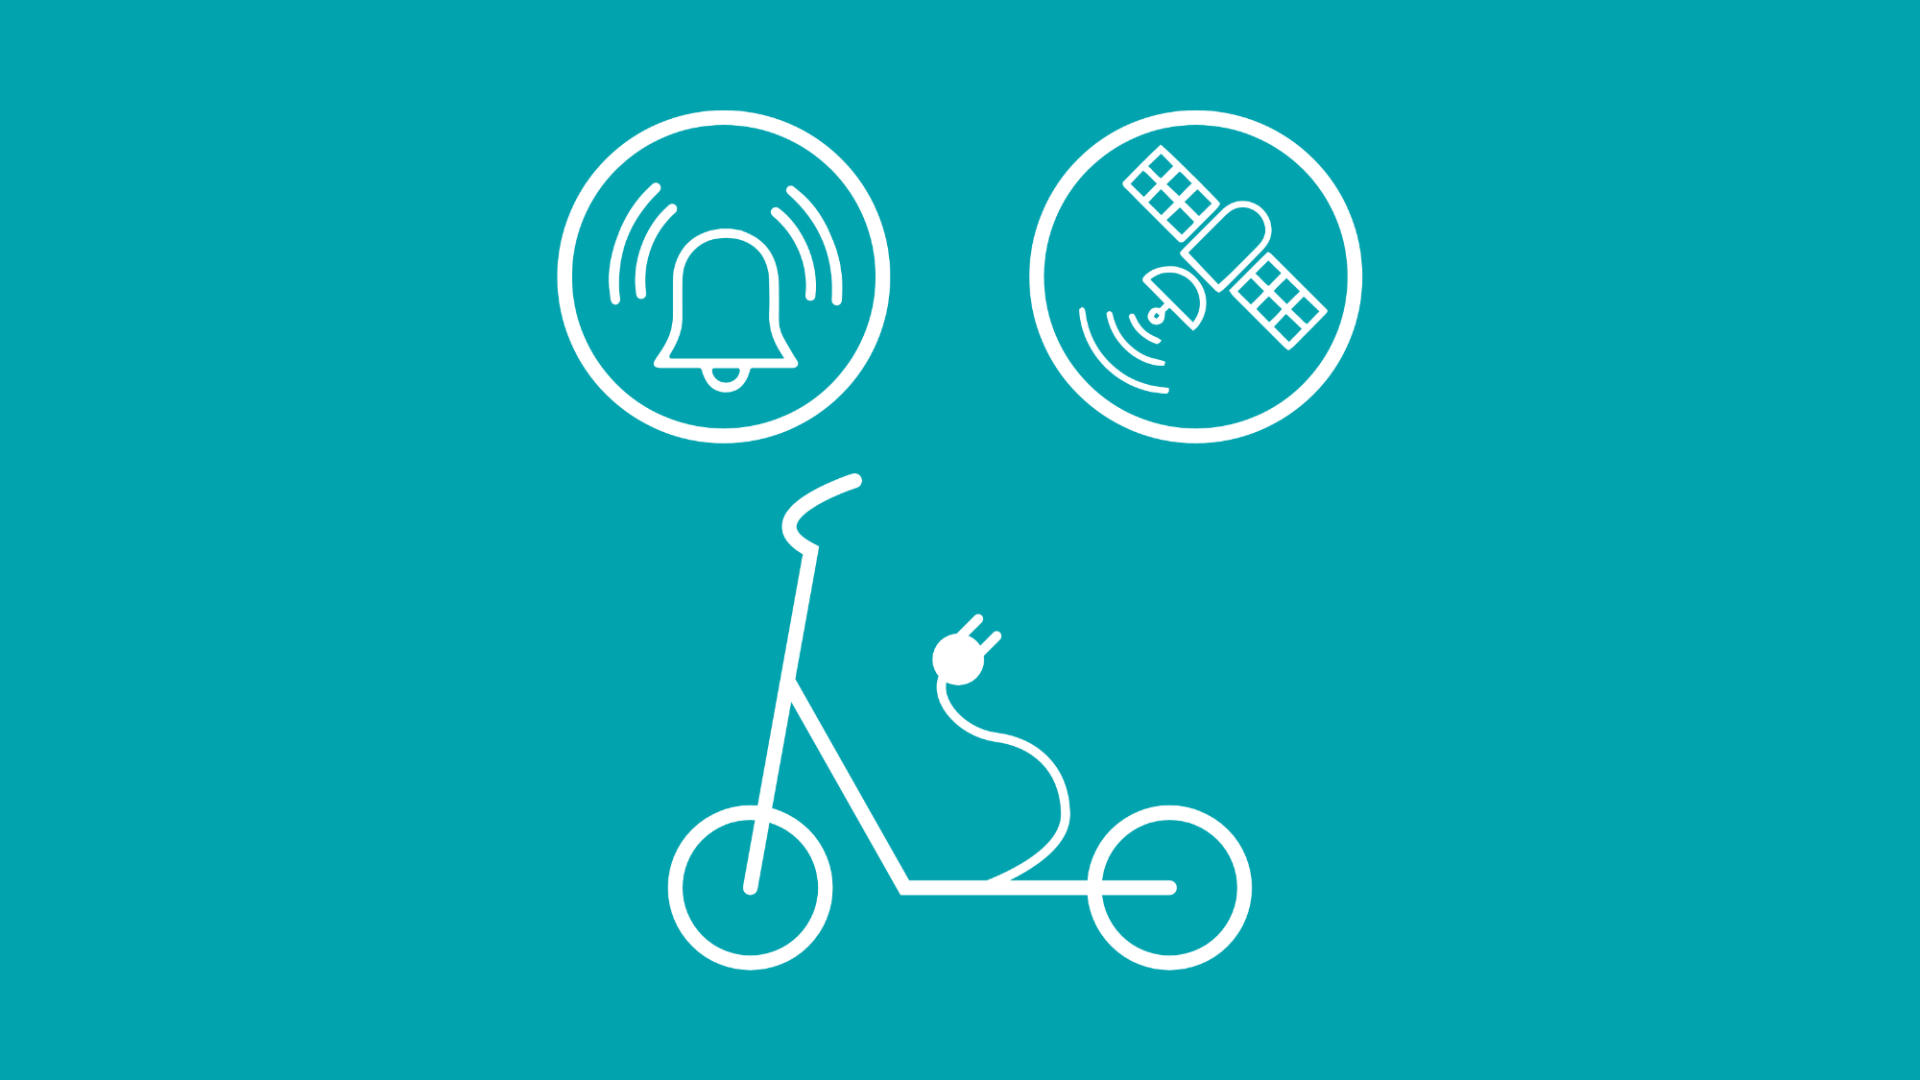 Im Fokus der Grafik steht ein E-Scooter, darüber ist im Icon-Stil eine Alarmanlage und ein GPS-Sensor abgebildet. 